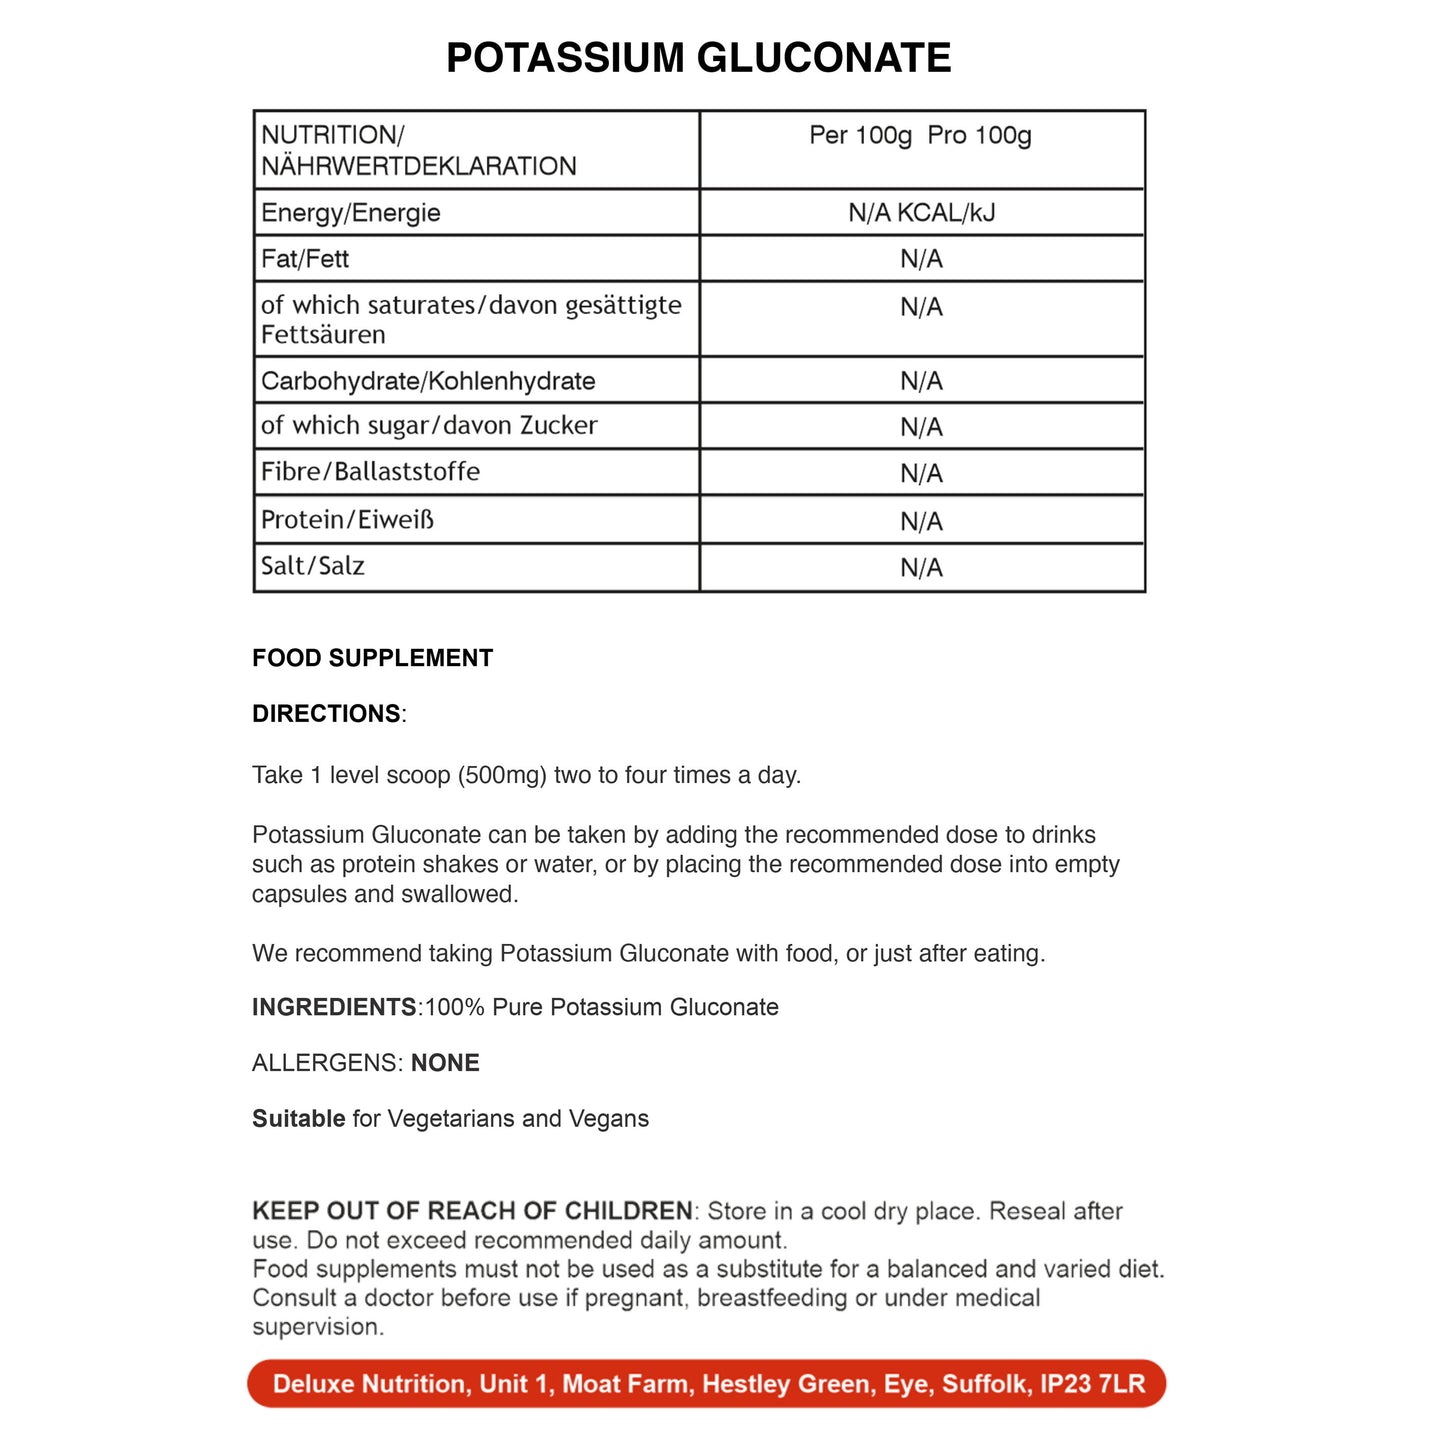 POTASSIUM GLUCONATE POWDER ADDITIVE FREE 100% PURE VEGAN